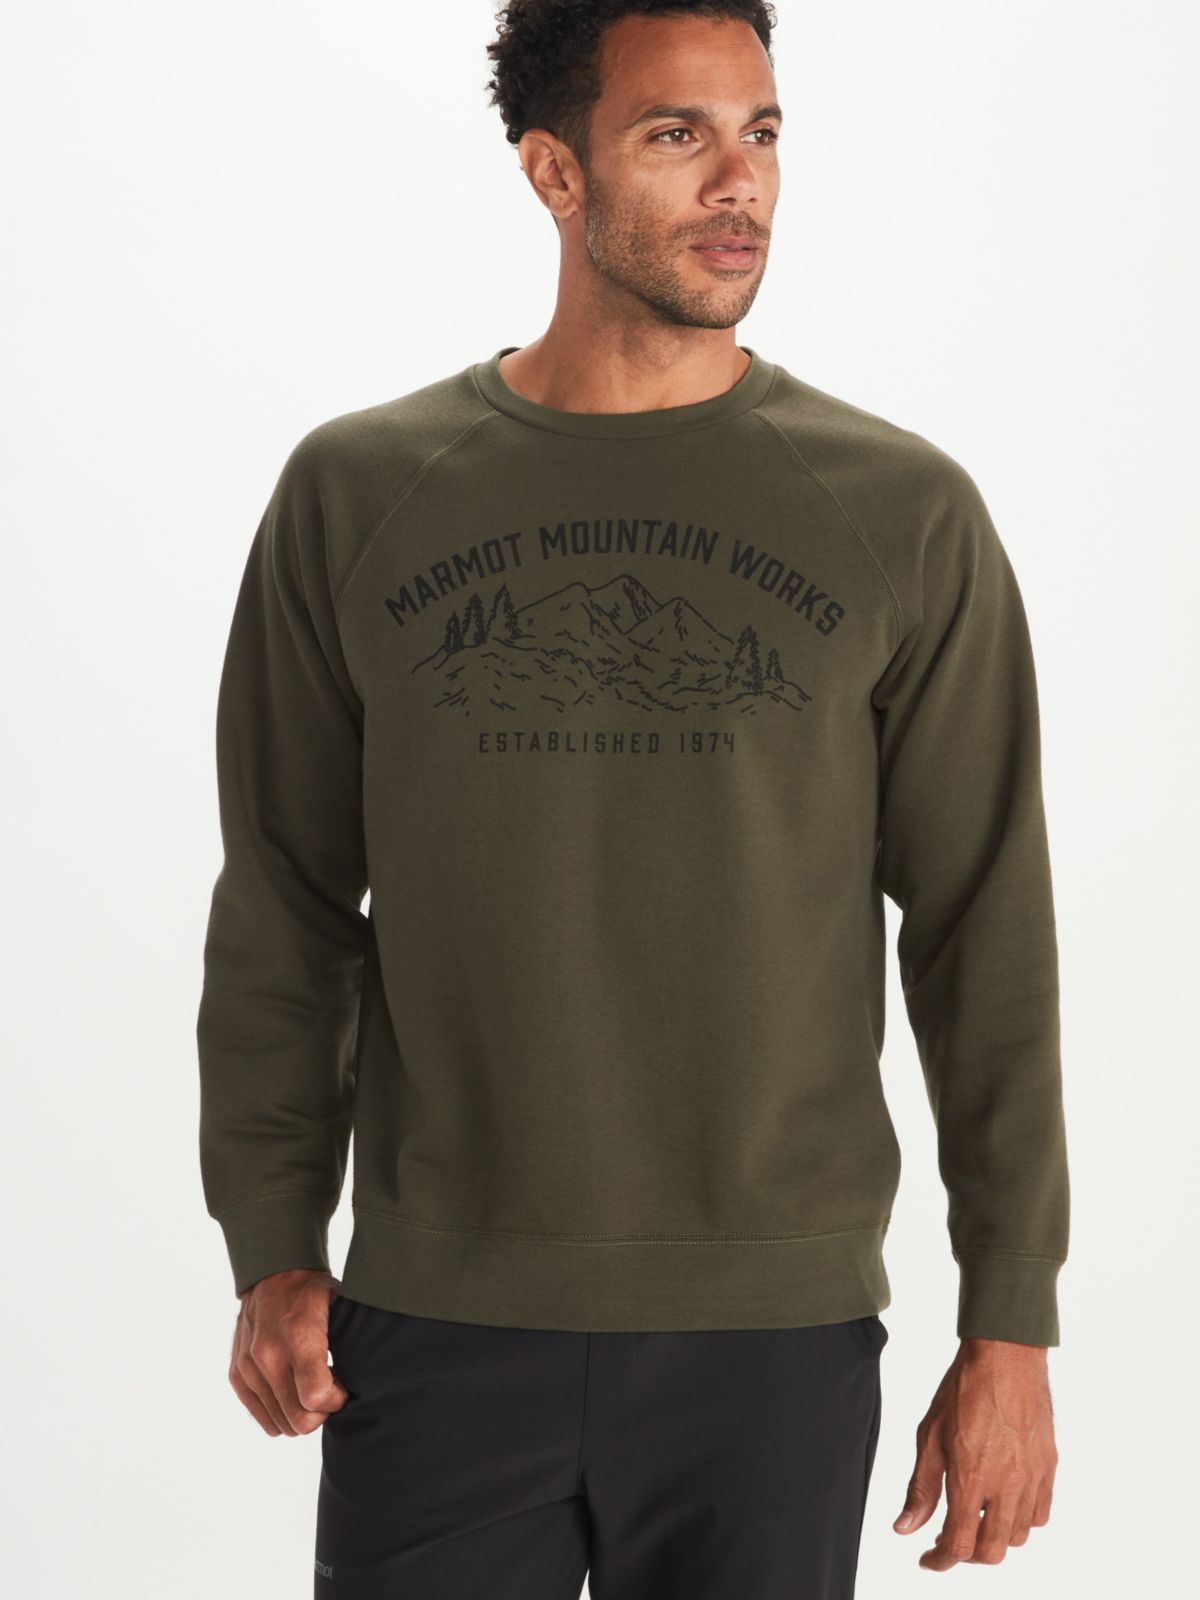 Men's Mountain Works Crew Sweatshirt